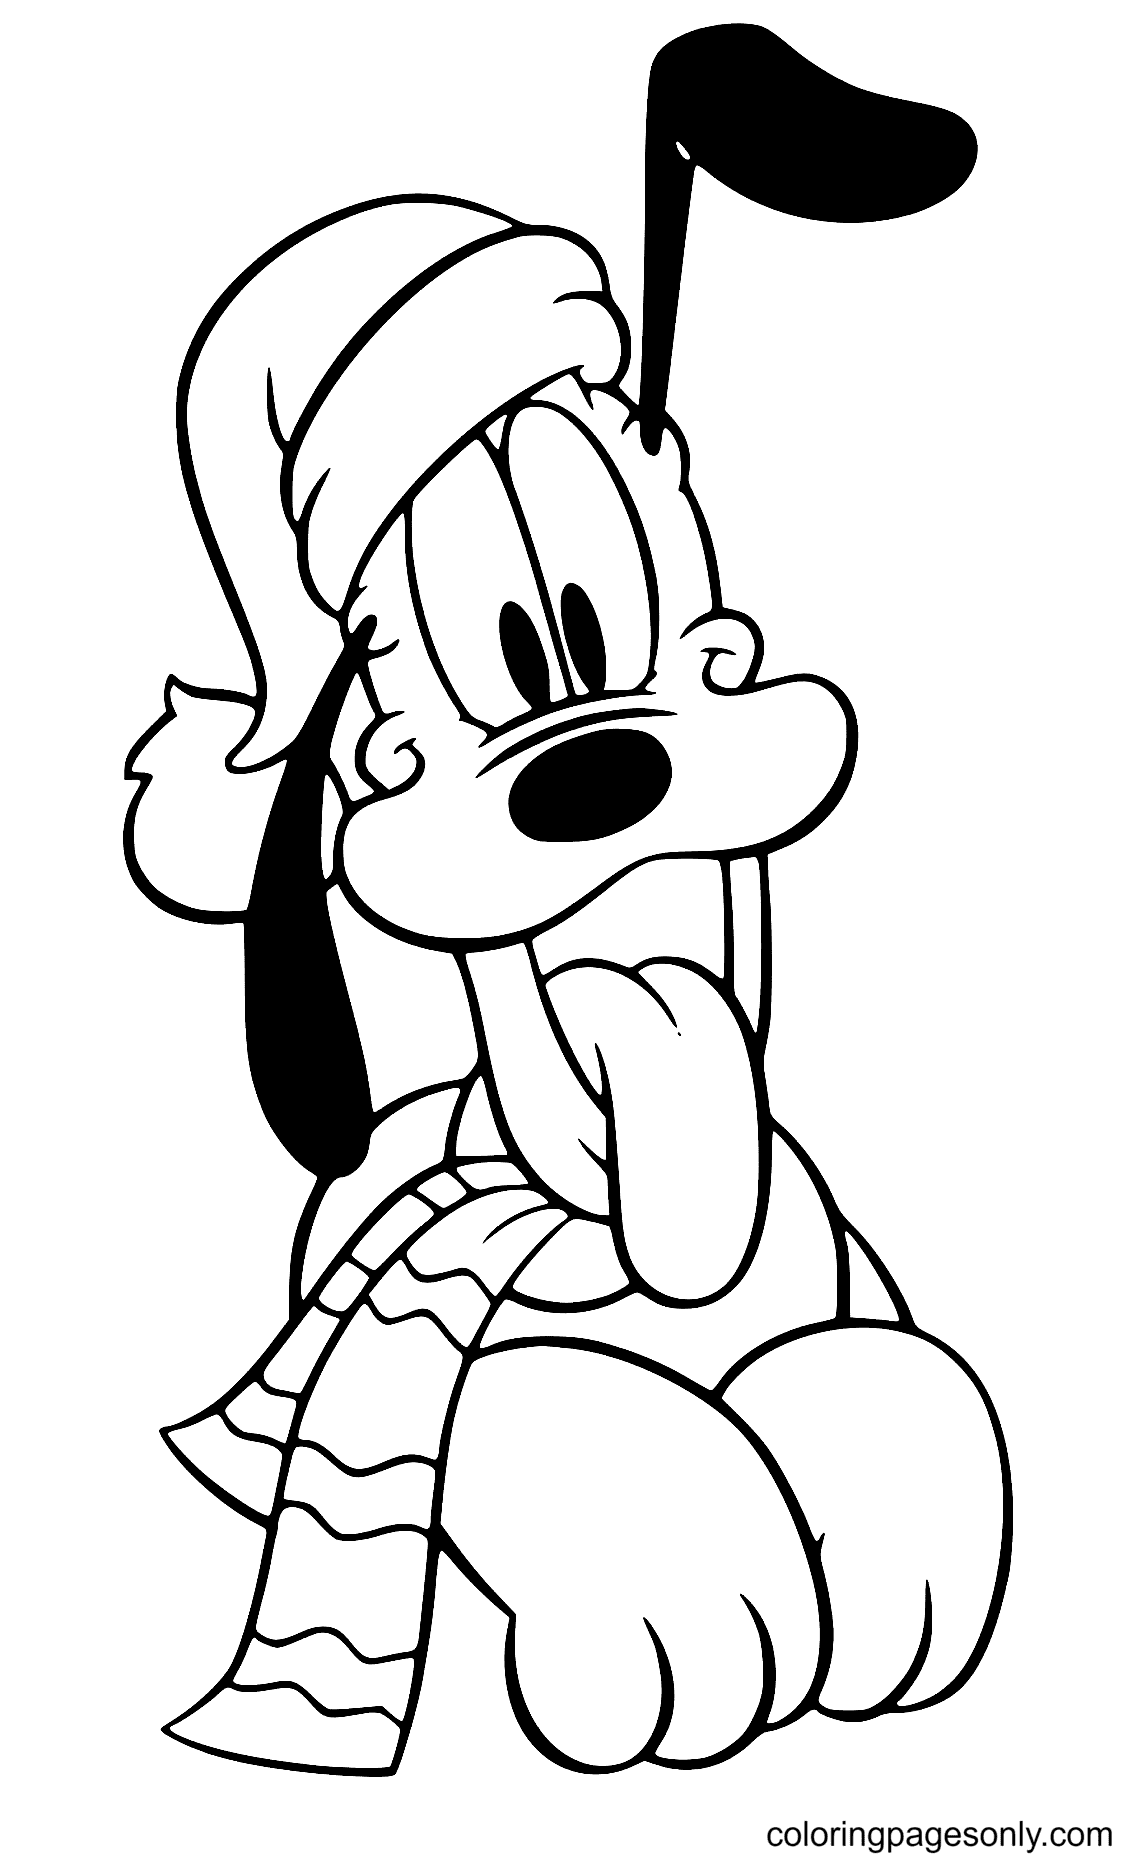 Pluton portant un chapeau de Noël de Disney Christmas